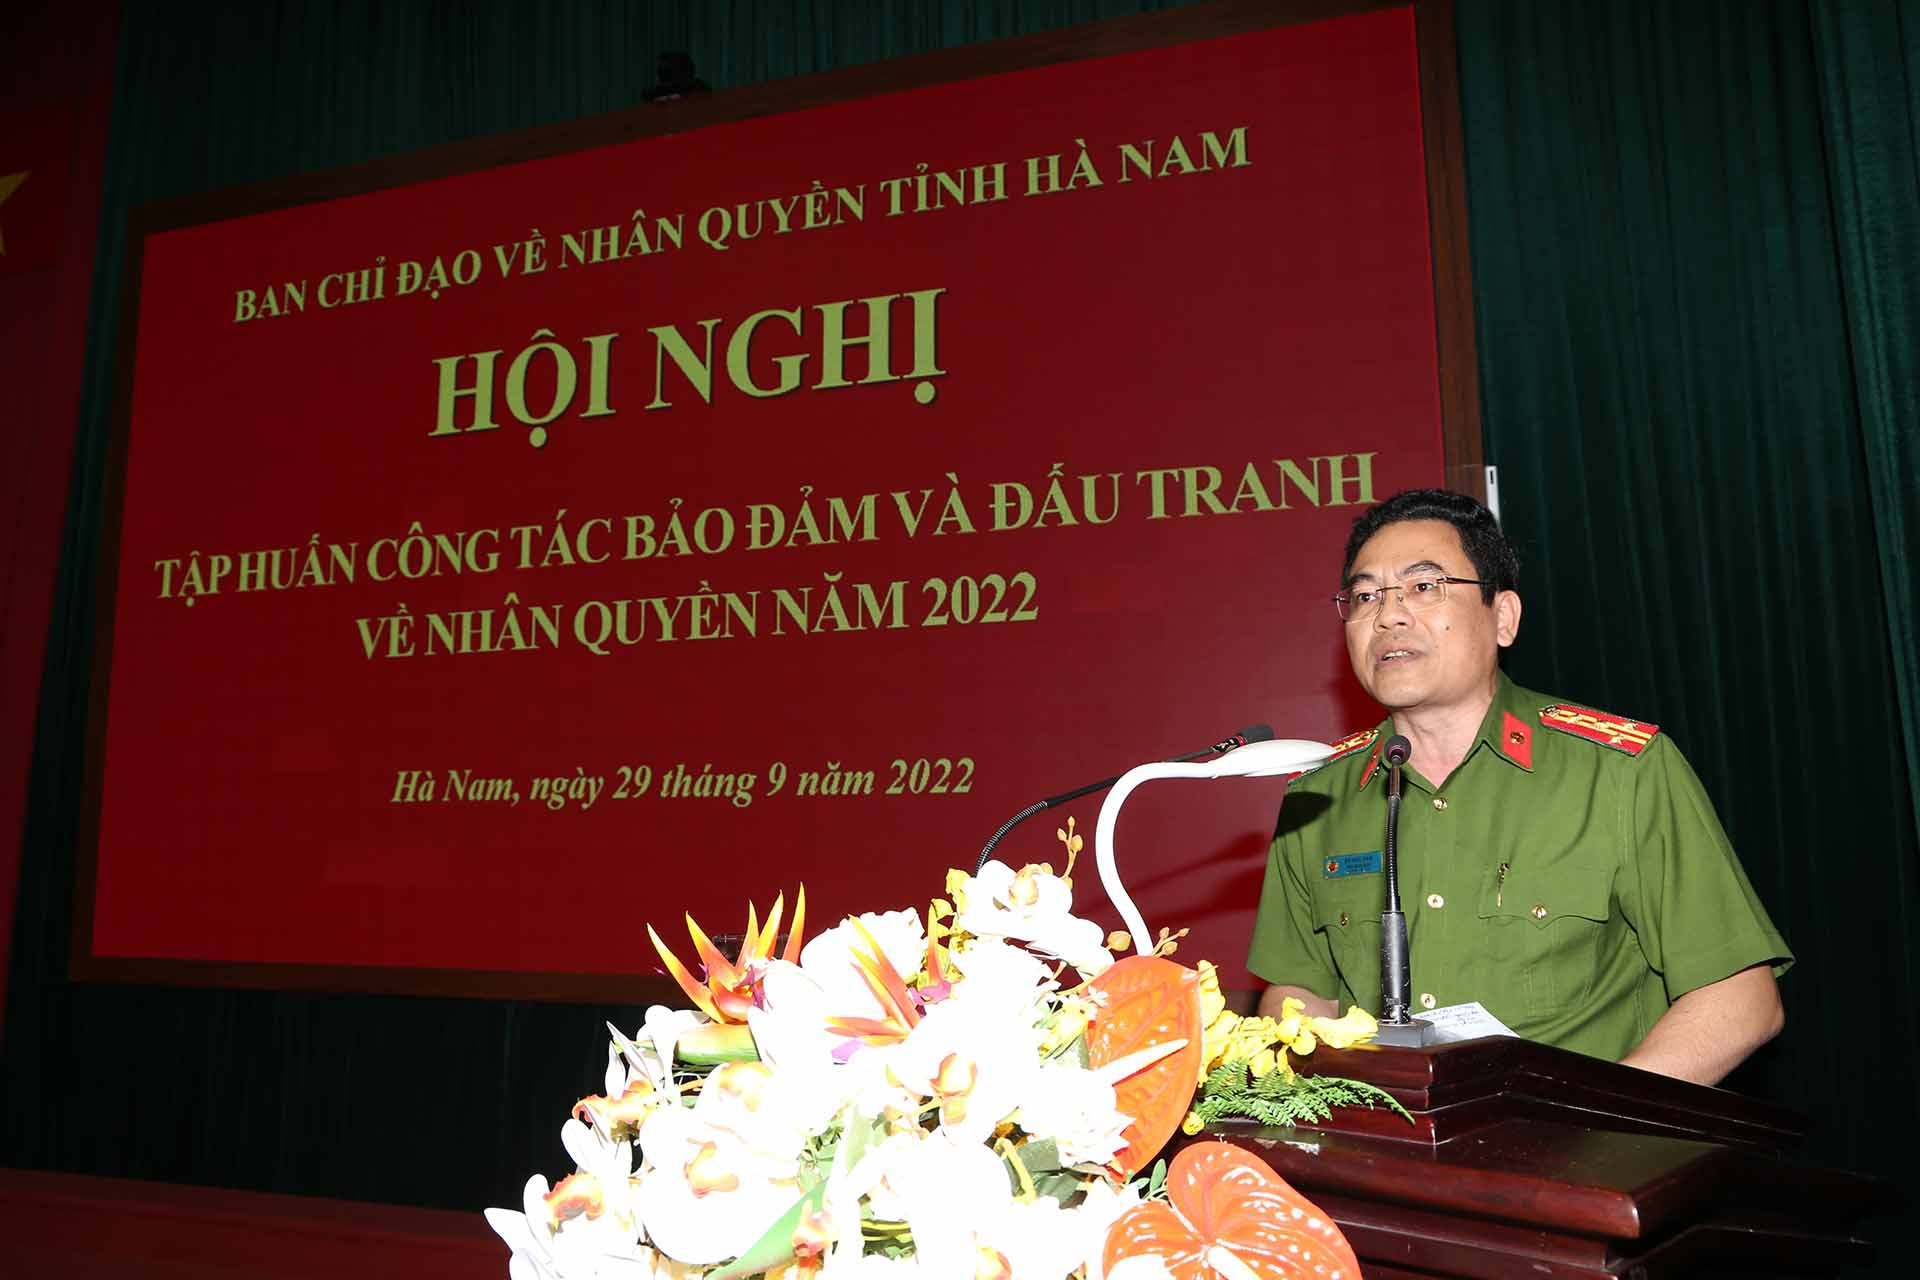 Phó giám đốc Công an tỉnh Hà Nam phát biểu.